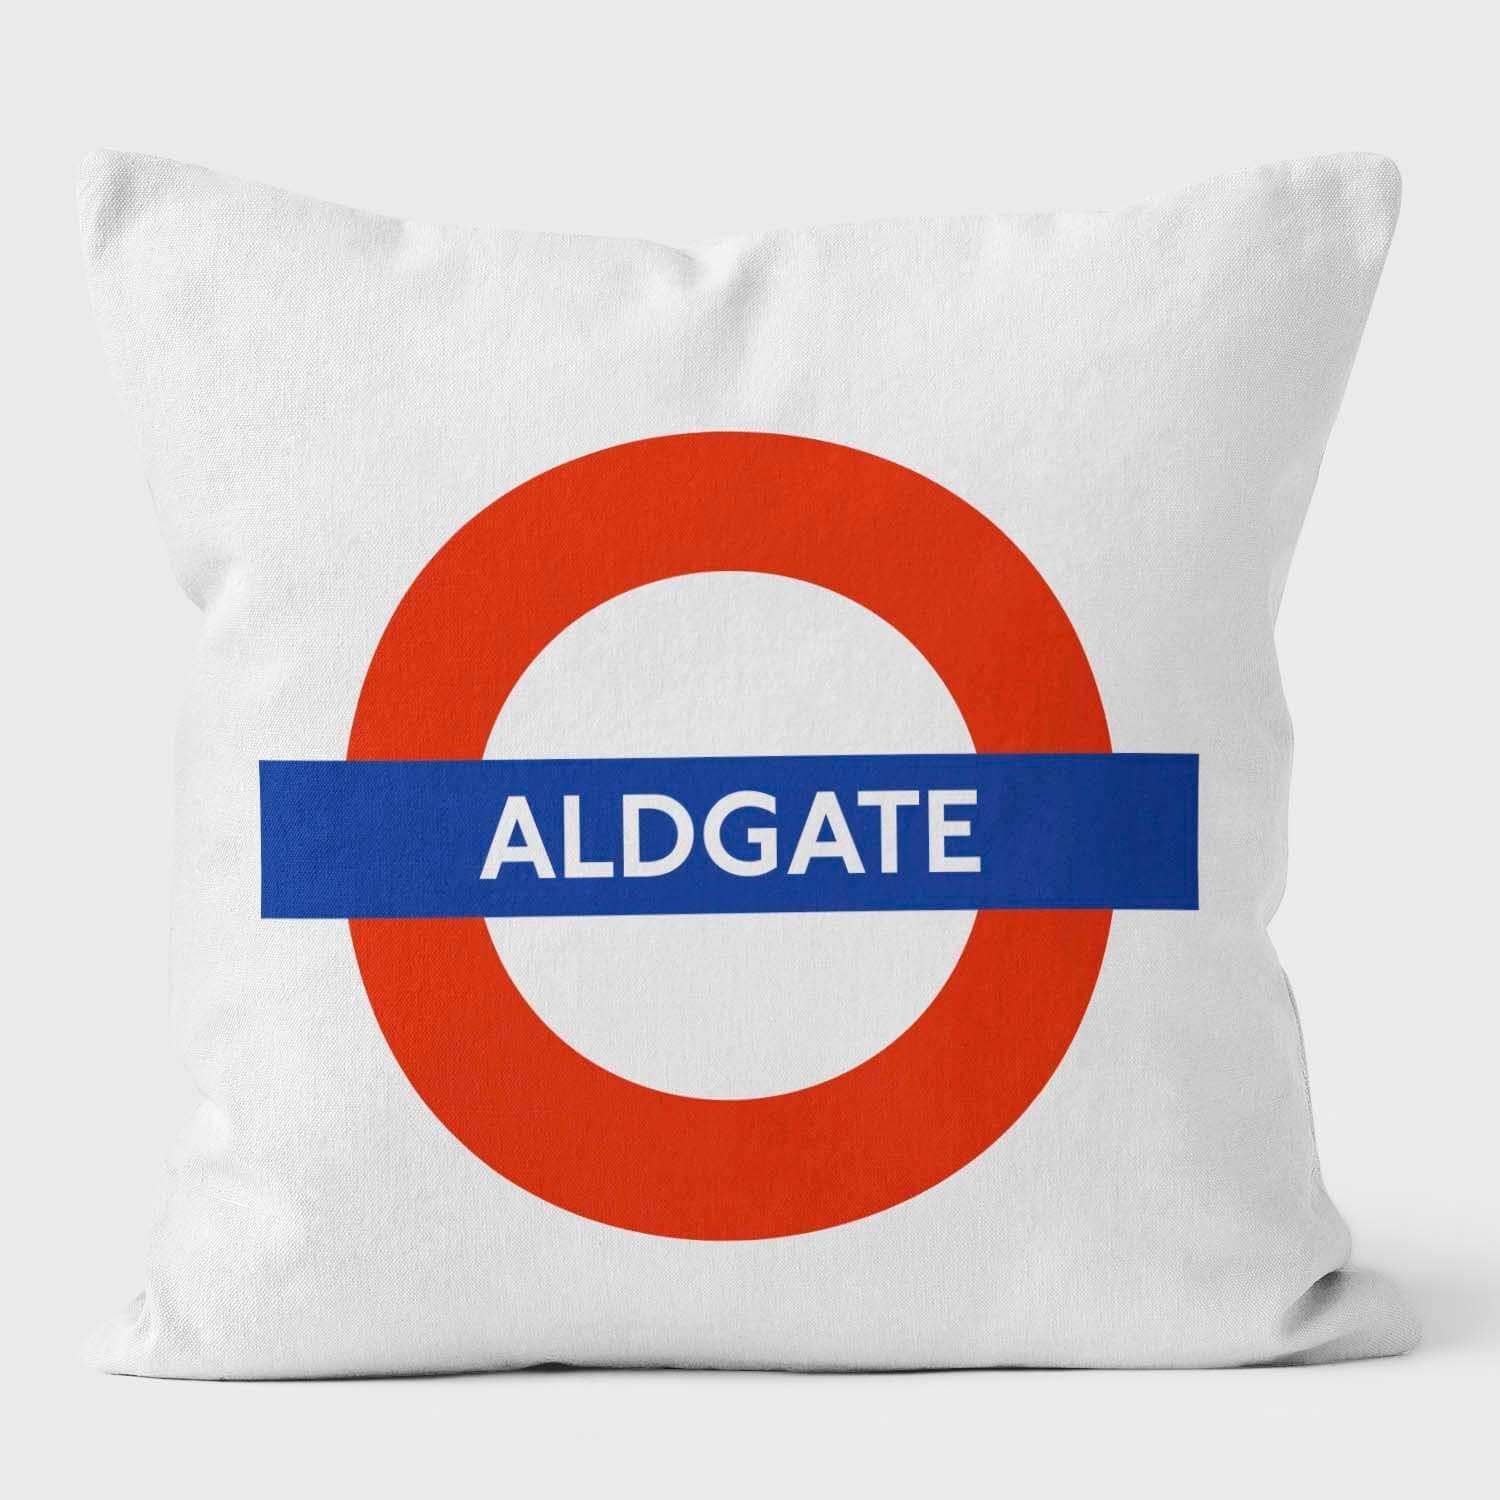 Aldgate London Underground Tube Station Roundel Cushion - Handmade Cushions UK - WeLoveCushions